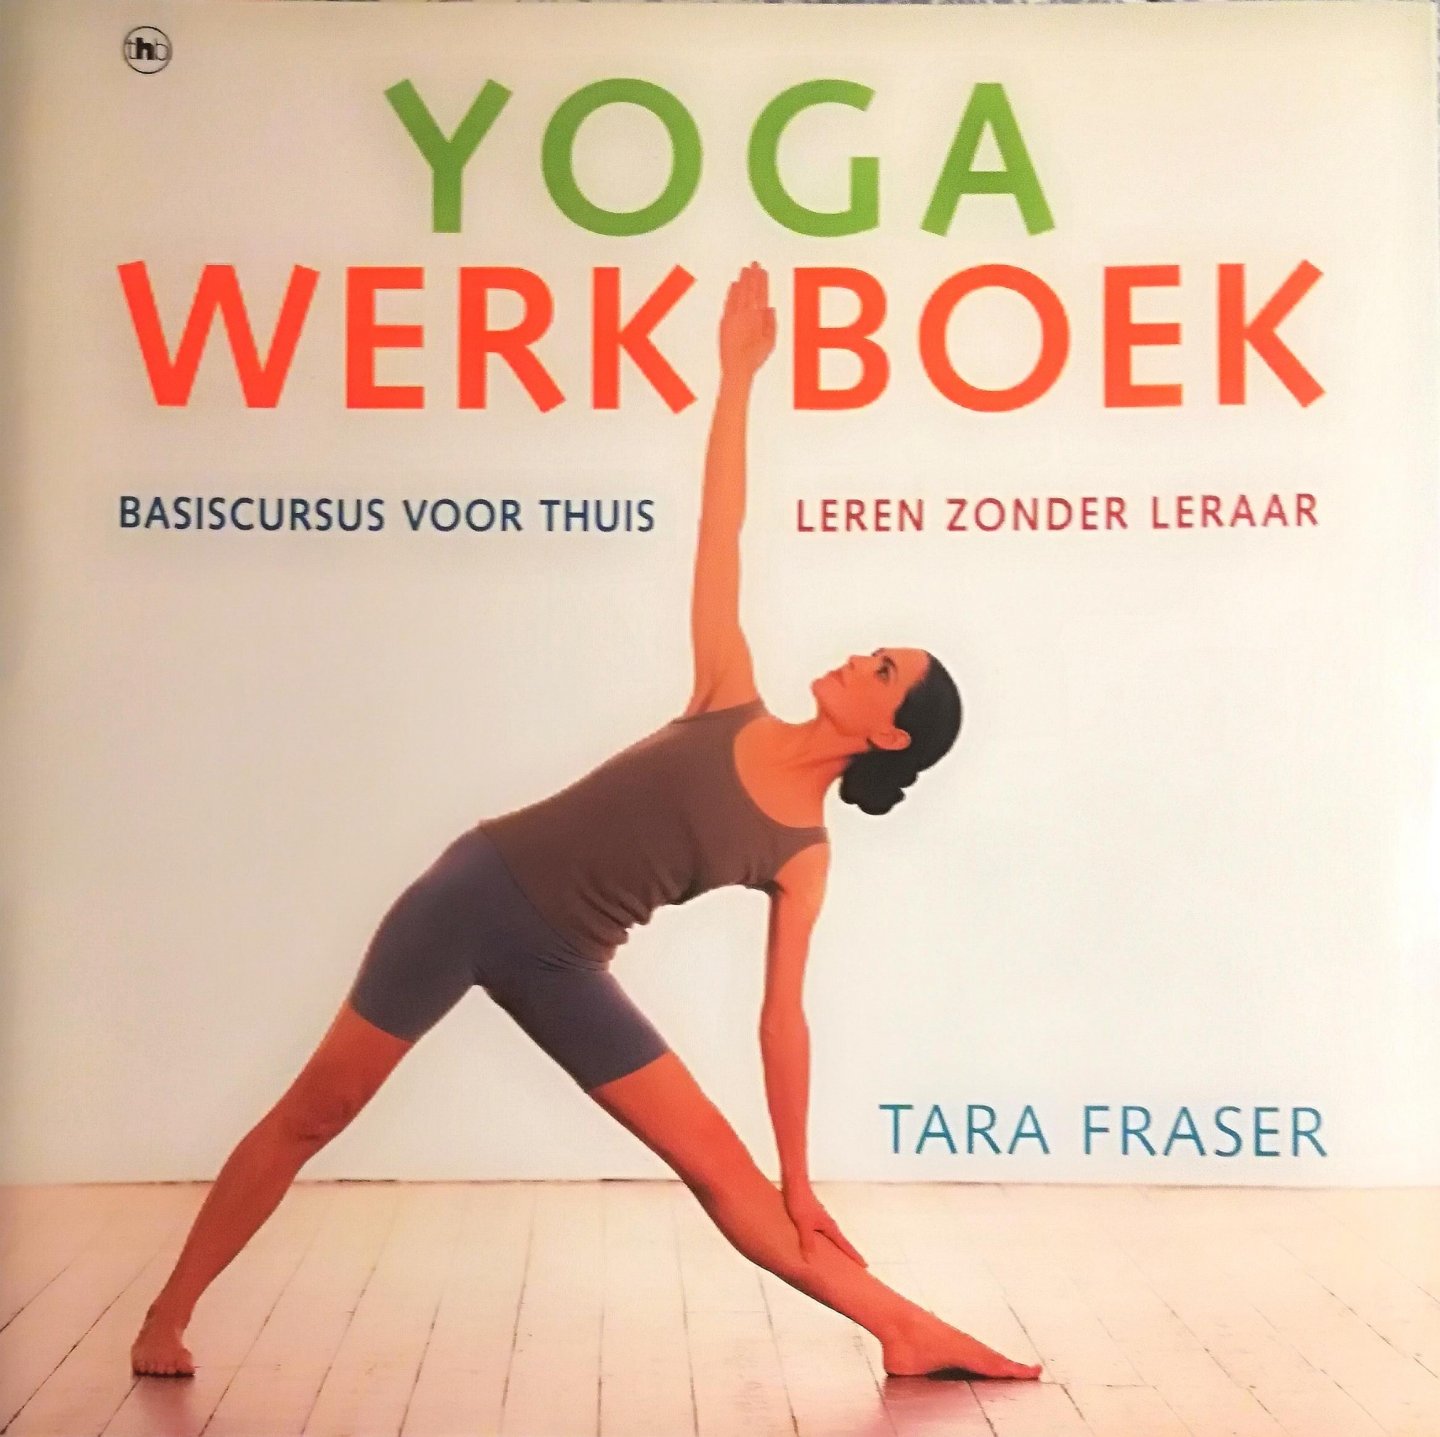 Fraser , Tara . [ ISBN 9789044308884 ] 1223 - Yoga Werkboek . ( Basiscursus voor thuis / Leren zonder leraar . ) Dit unieke boek biedt een complete yogacursus. Het bevat uitvoerige beschrijvingen hoe iedere oefening het eenvoudigst uitgevoerd kan worden, zodat je thuis zonder leraar meteen -